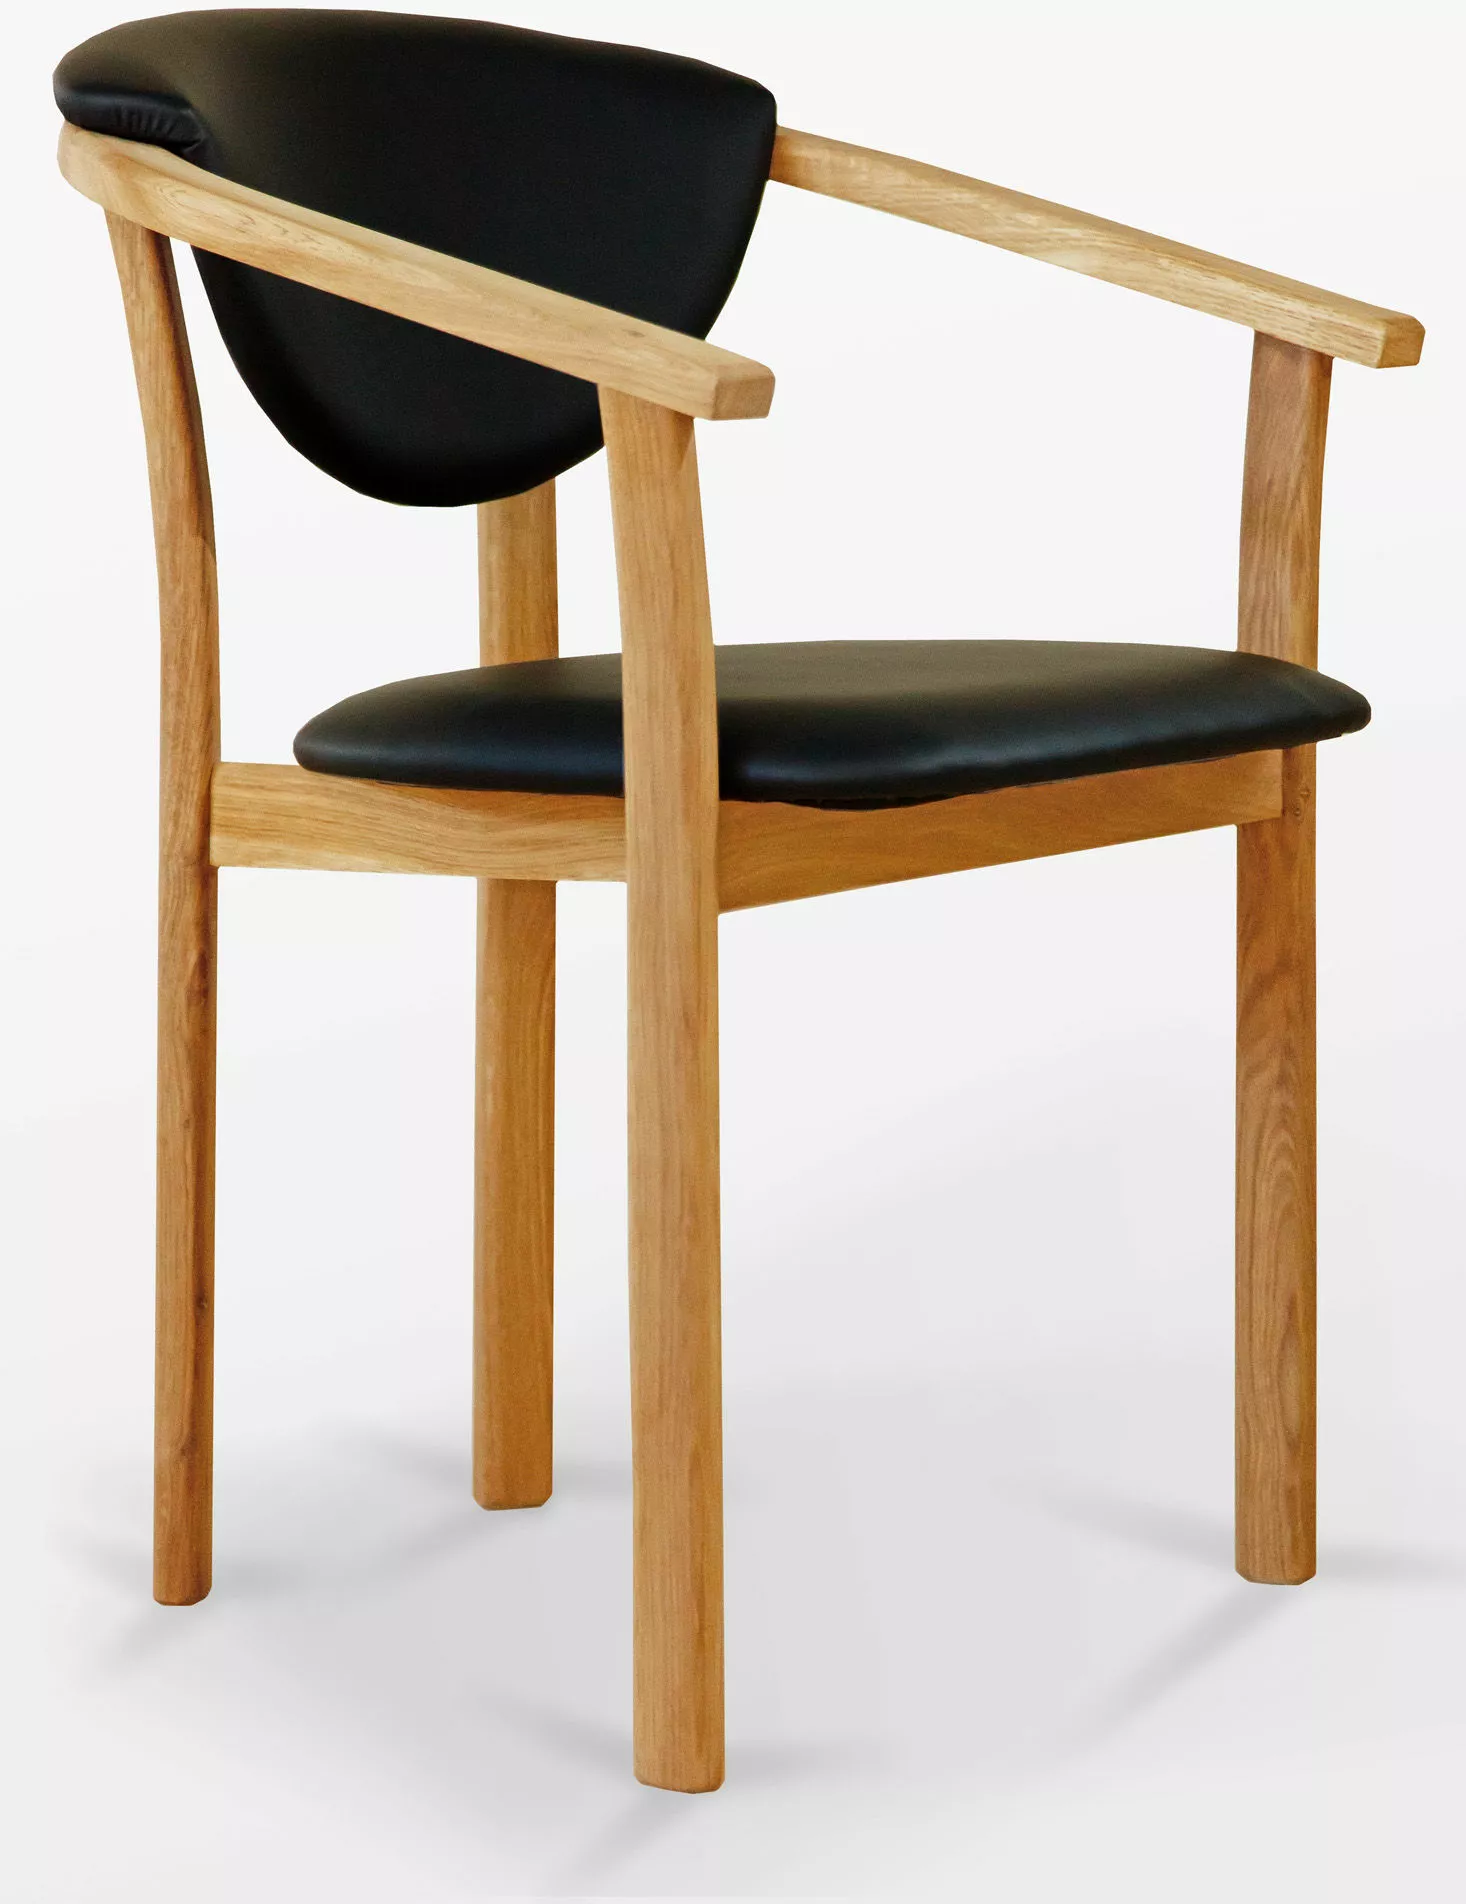 Meble Woodica - krzesła, stoły, komody, biurka